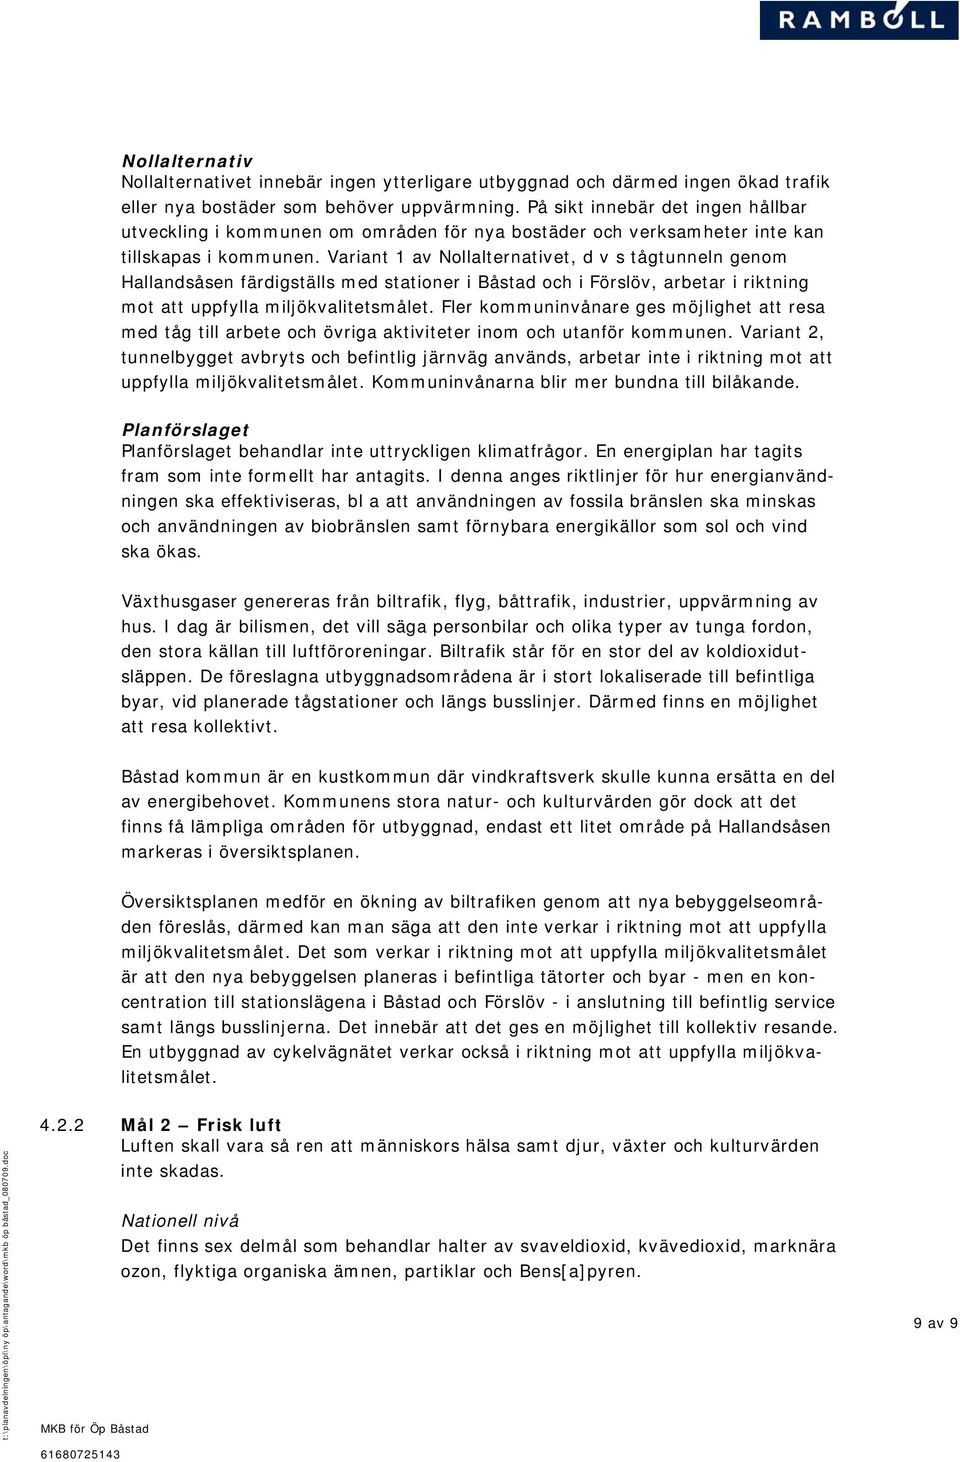 Variant 1 av et, d v s tågtunneln genom Hallandsåsen färdigställs med stationer i Båstad och i Förslöv, arbetar i riktning mot att uppfylla miljökvalitetsmålet.